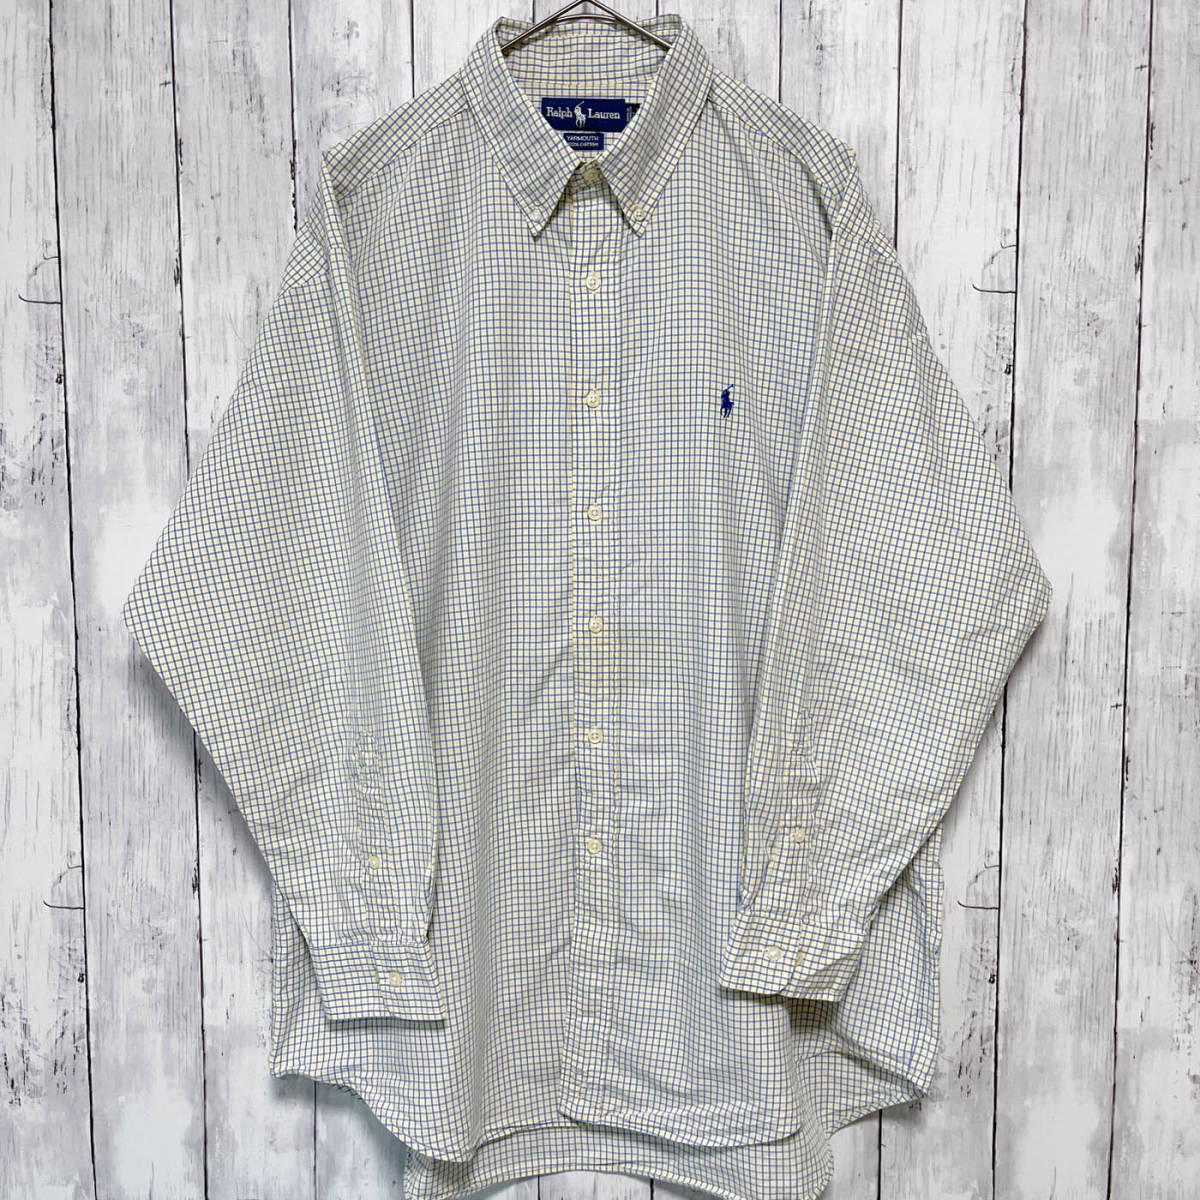 ラルフローレン Ralph Lauren YARMOUTH チェックシャツ 長袖シャツ メンズ ワンポイント コットン100% サイズ17 XLサイズ 3‐780